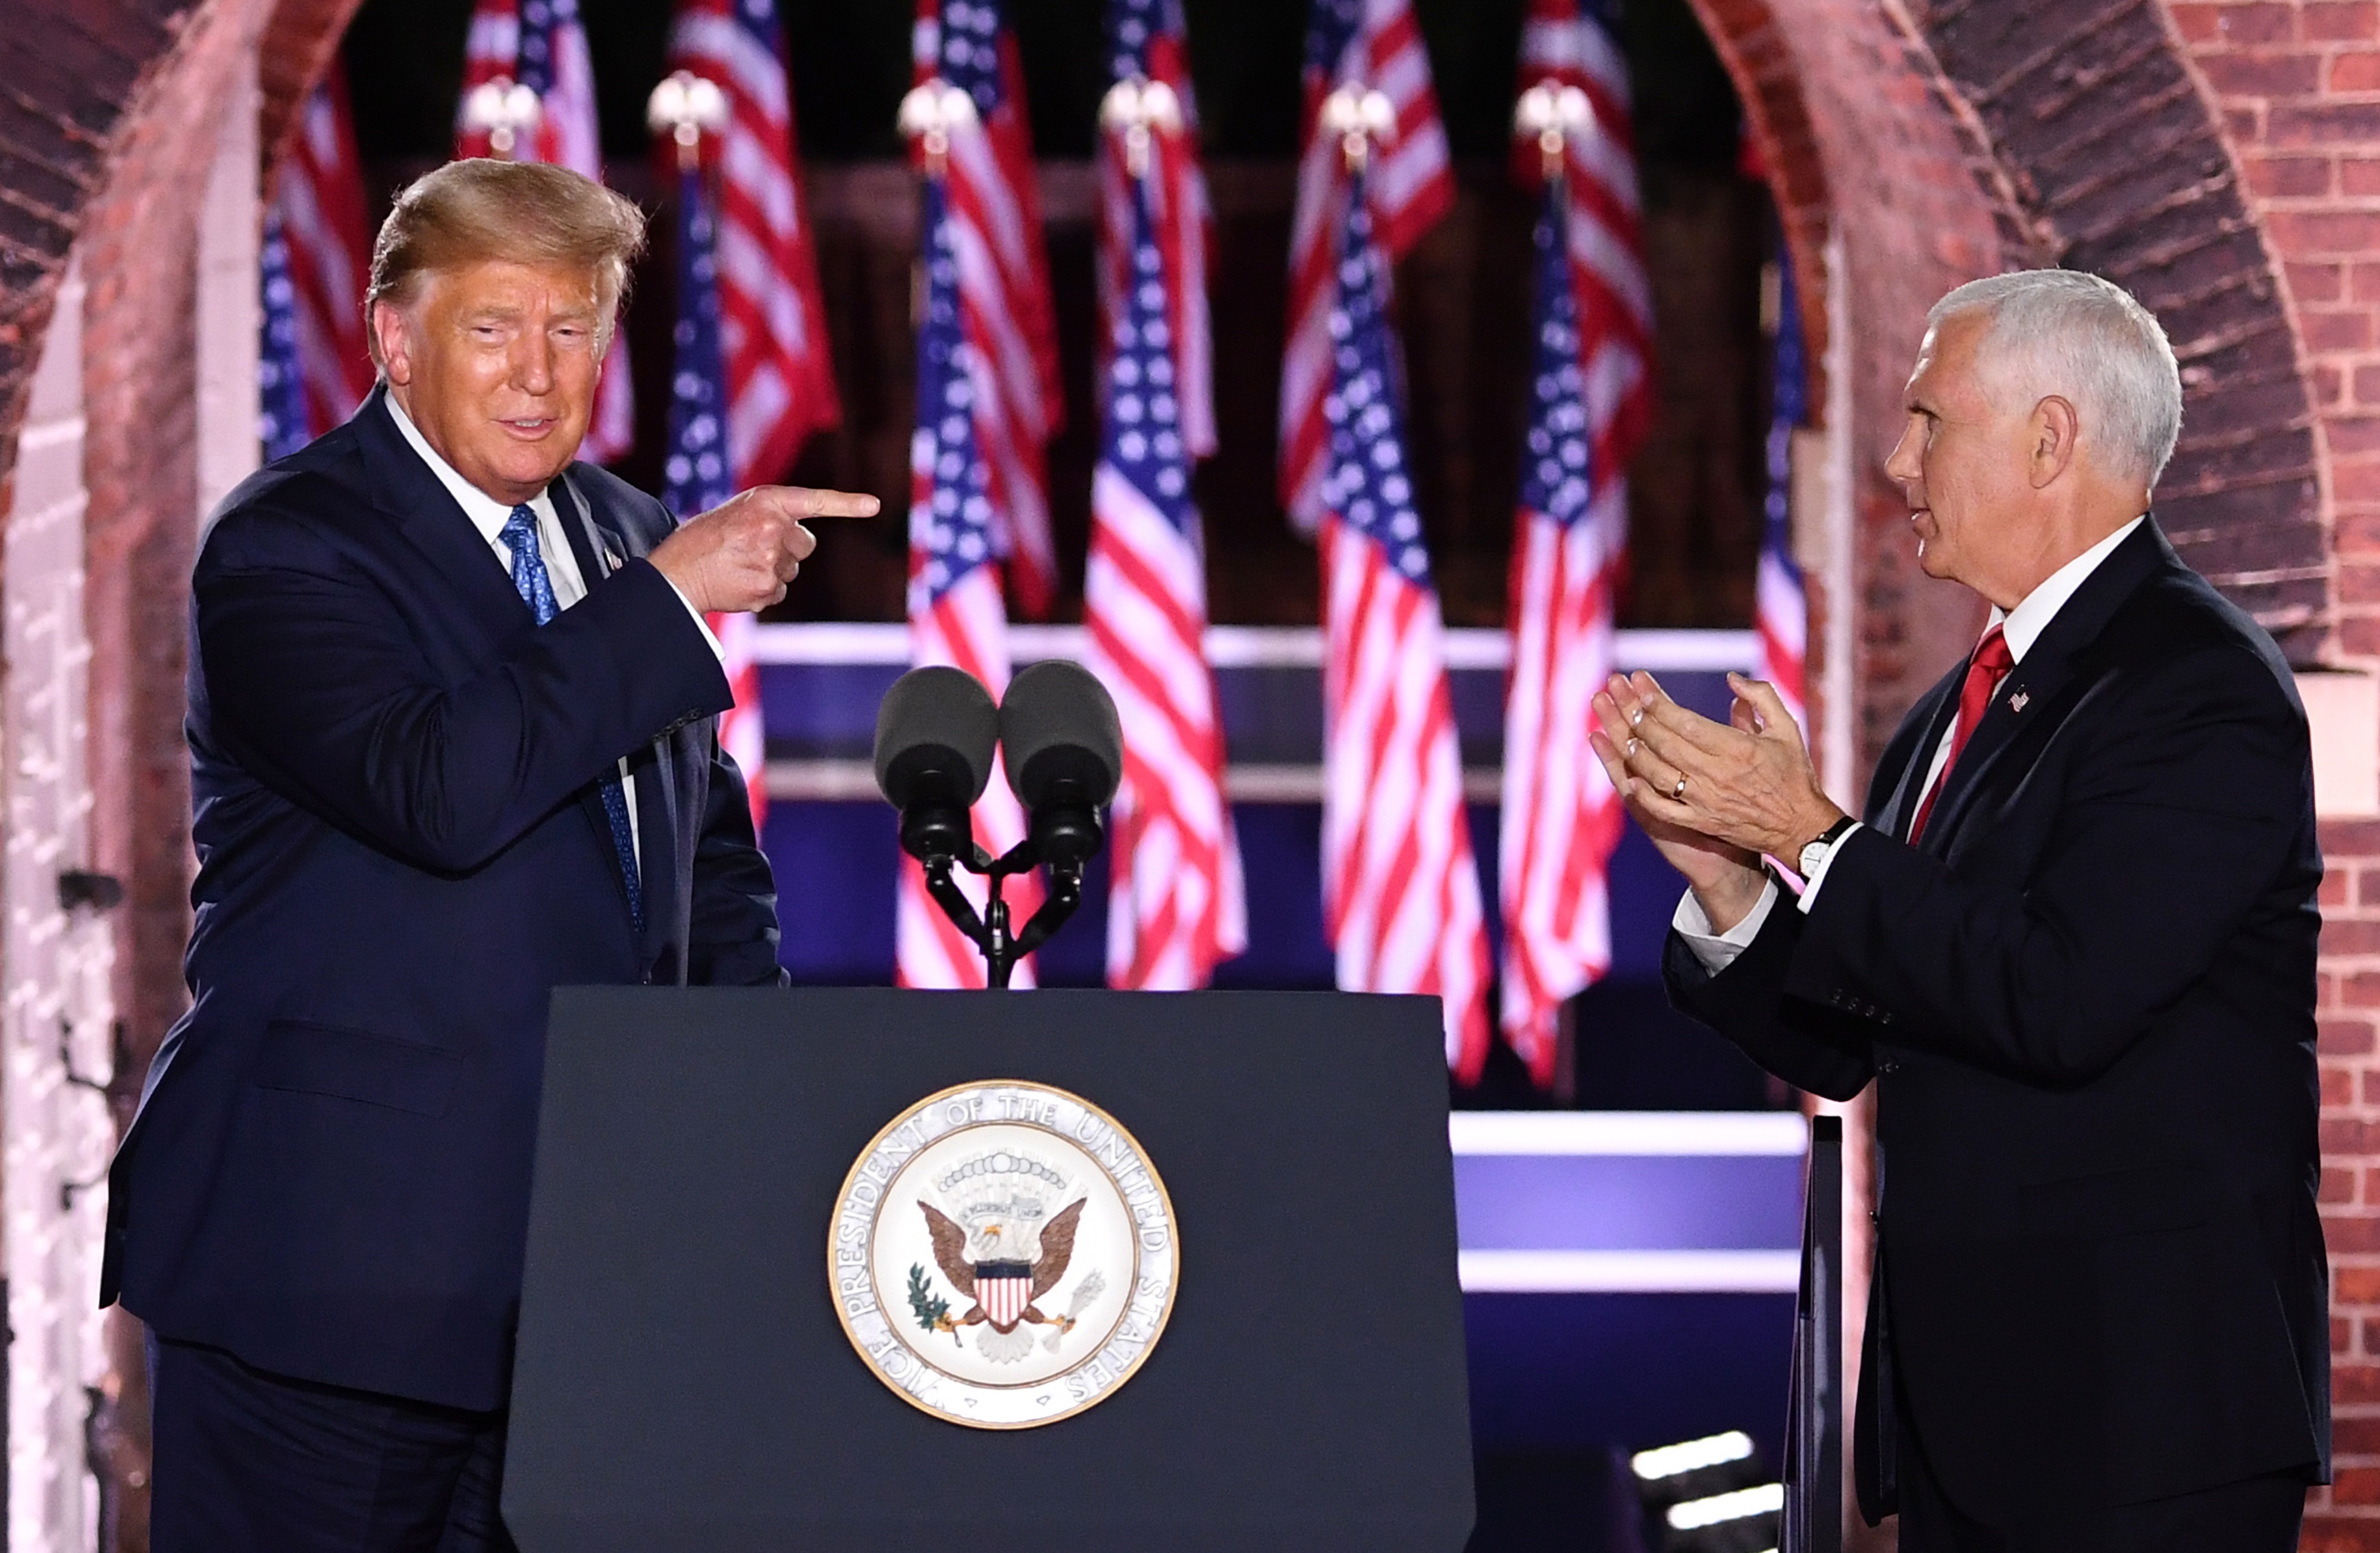 27/08/2020 El presidente de EEUU, Donald Trump, junto a su vicepresidente, Mike Pence, durante la tercera noche de la Convención Nacional Republicana.
POLITICA NORTEAMÉRICA ESTADOS UNIDOS NORTEAMÉRICA INTERNACIONAL
KEVIN DIETSCH - POOL VIA CNP / ZUMA PRESS / CONTAC
